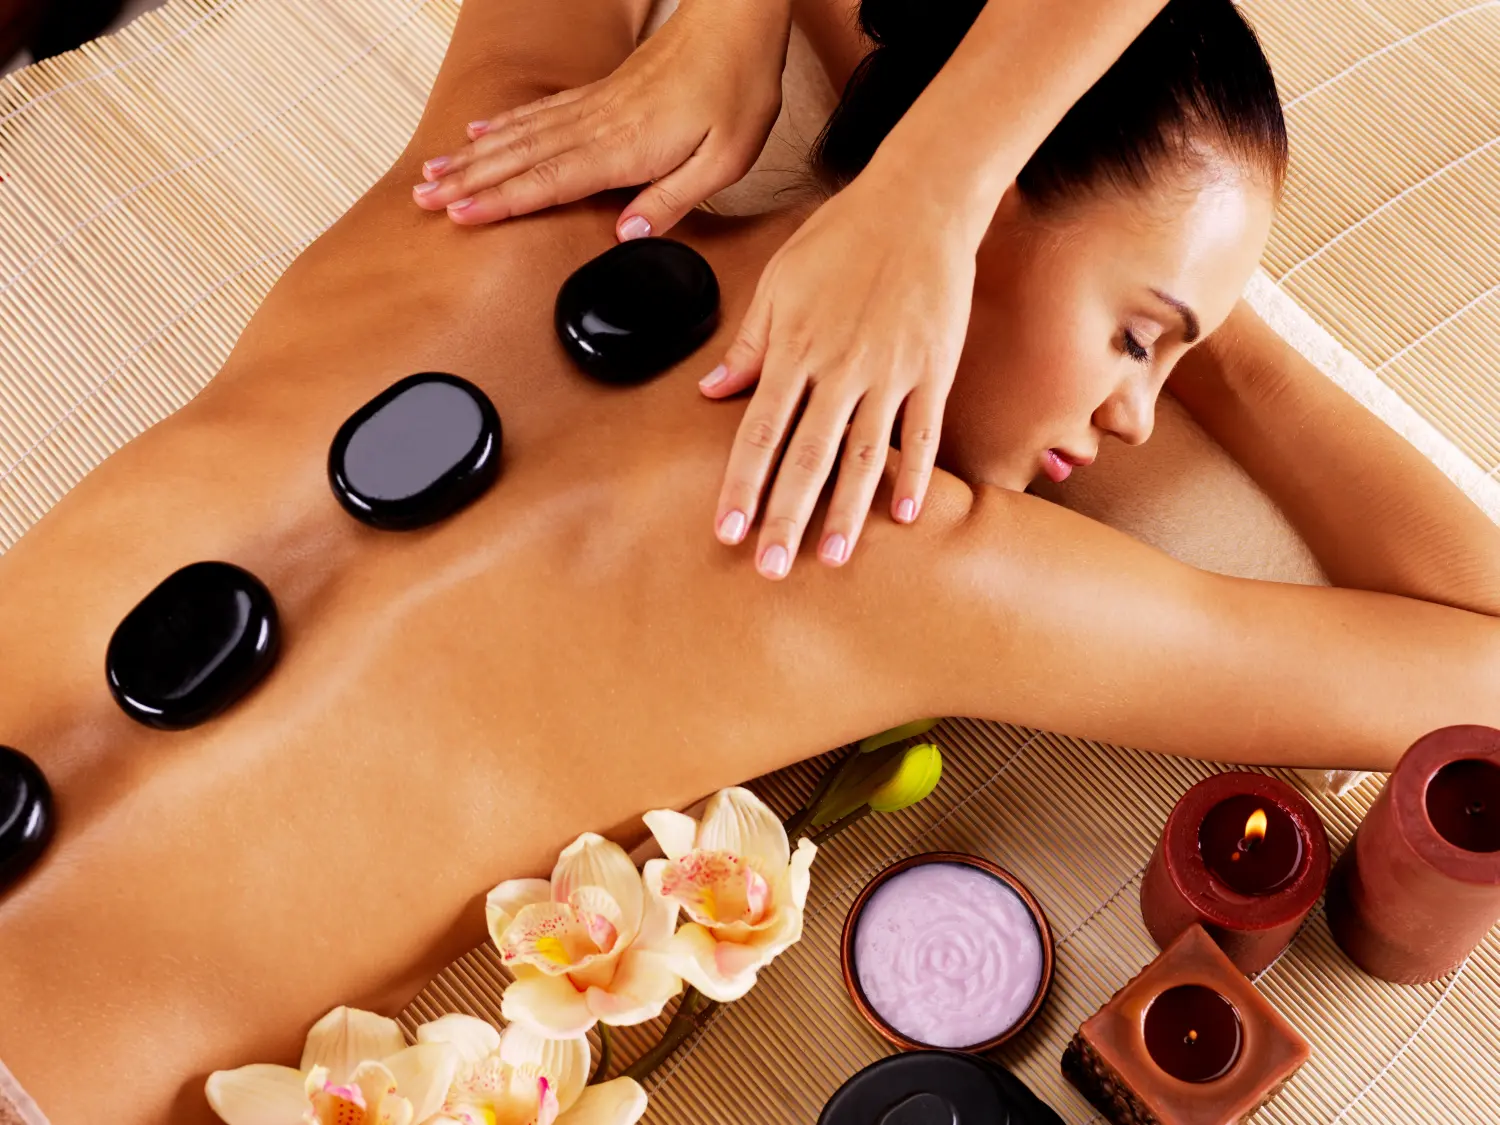 Erwachsene Frau bei einer Hot-Stone-Massage im Spa-Salon